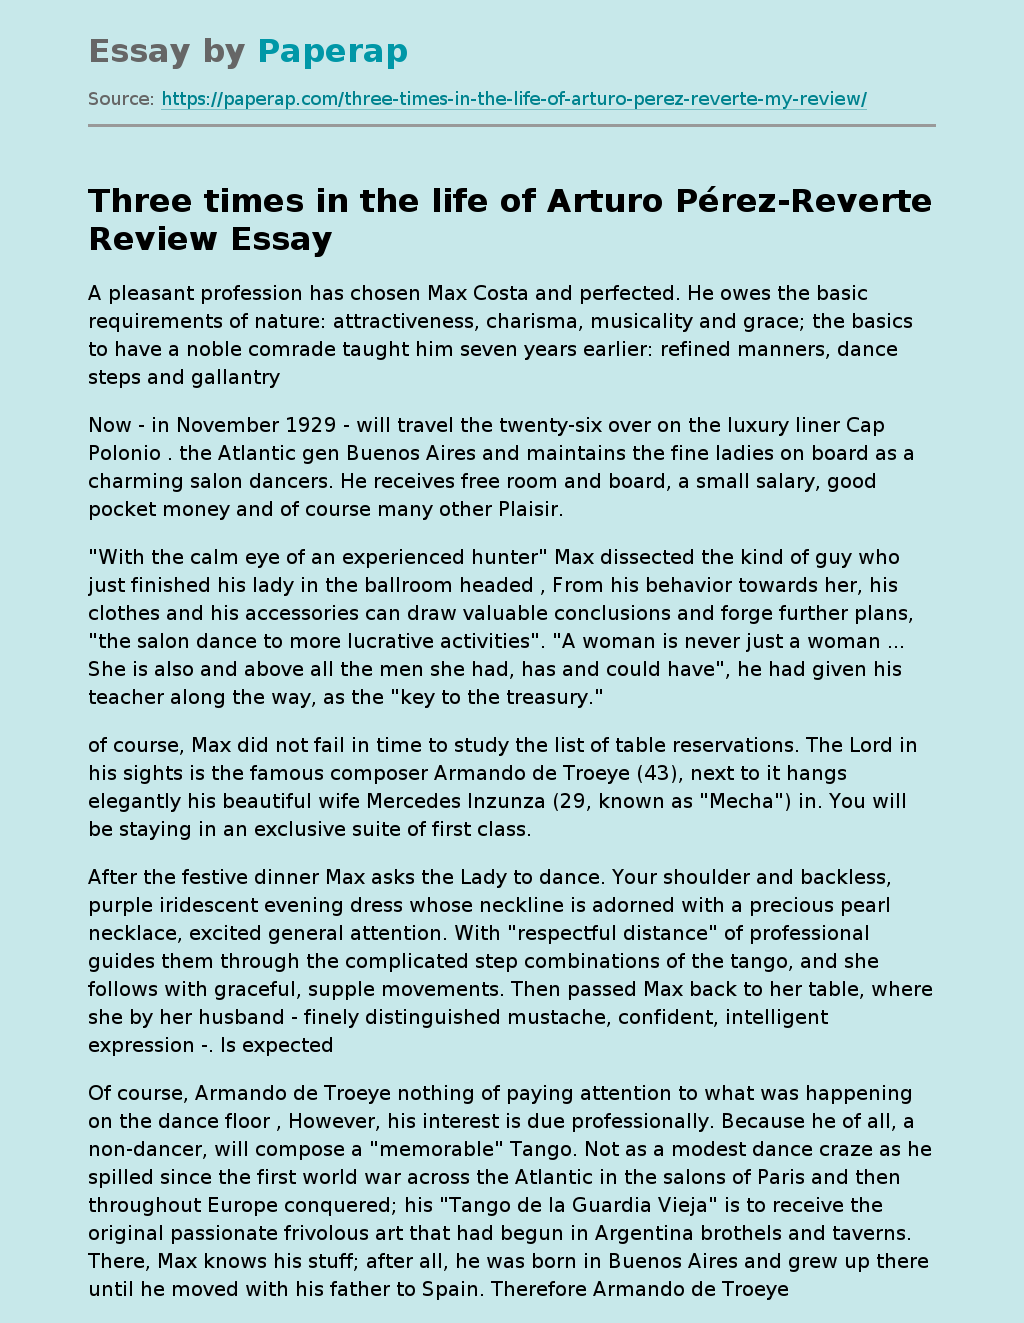 Three Times in the Life by Arturo Pérez-Reverte